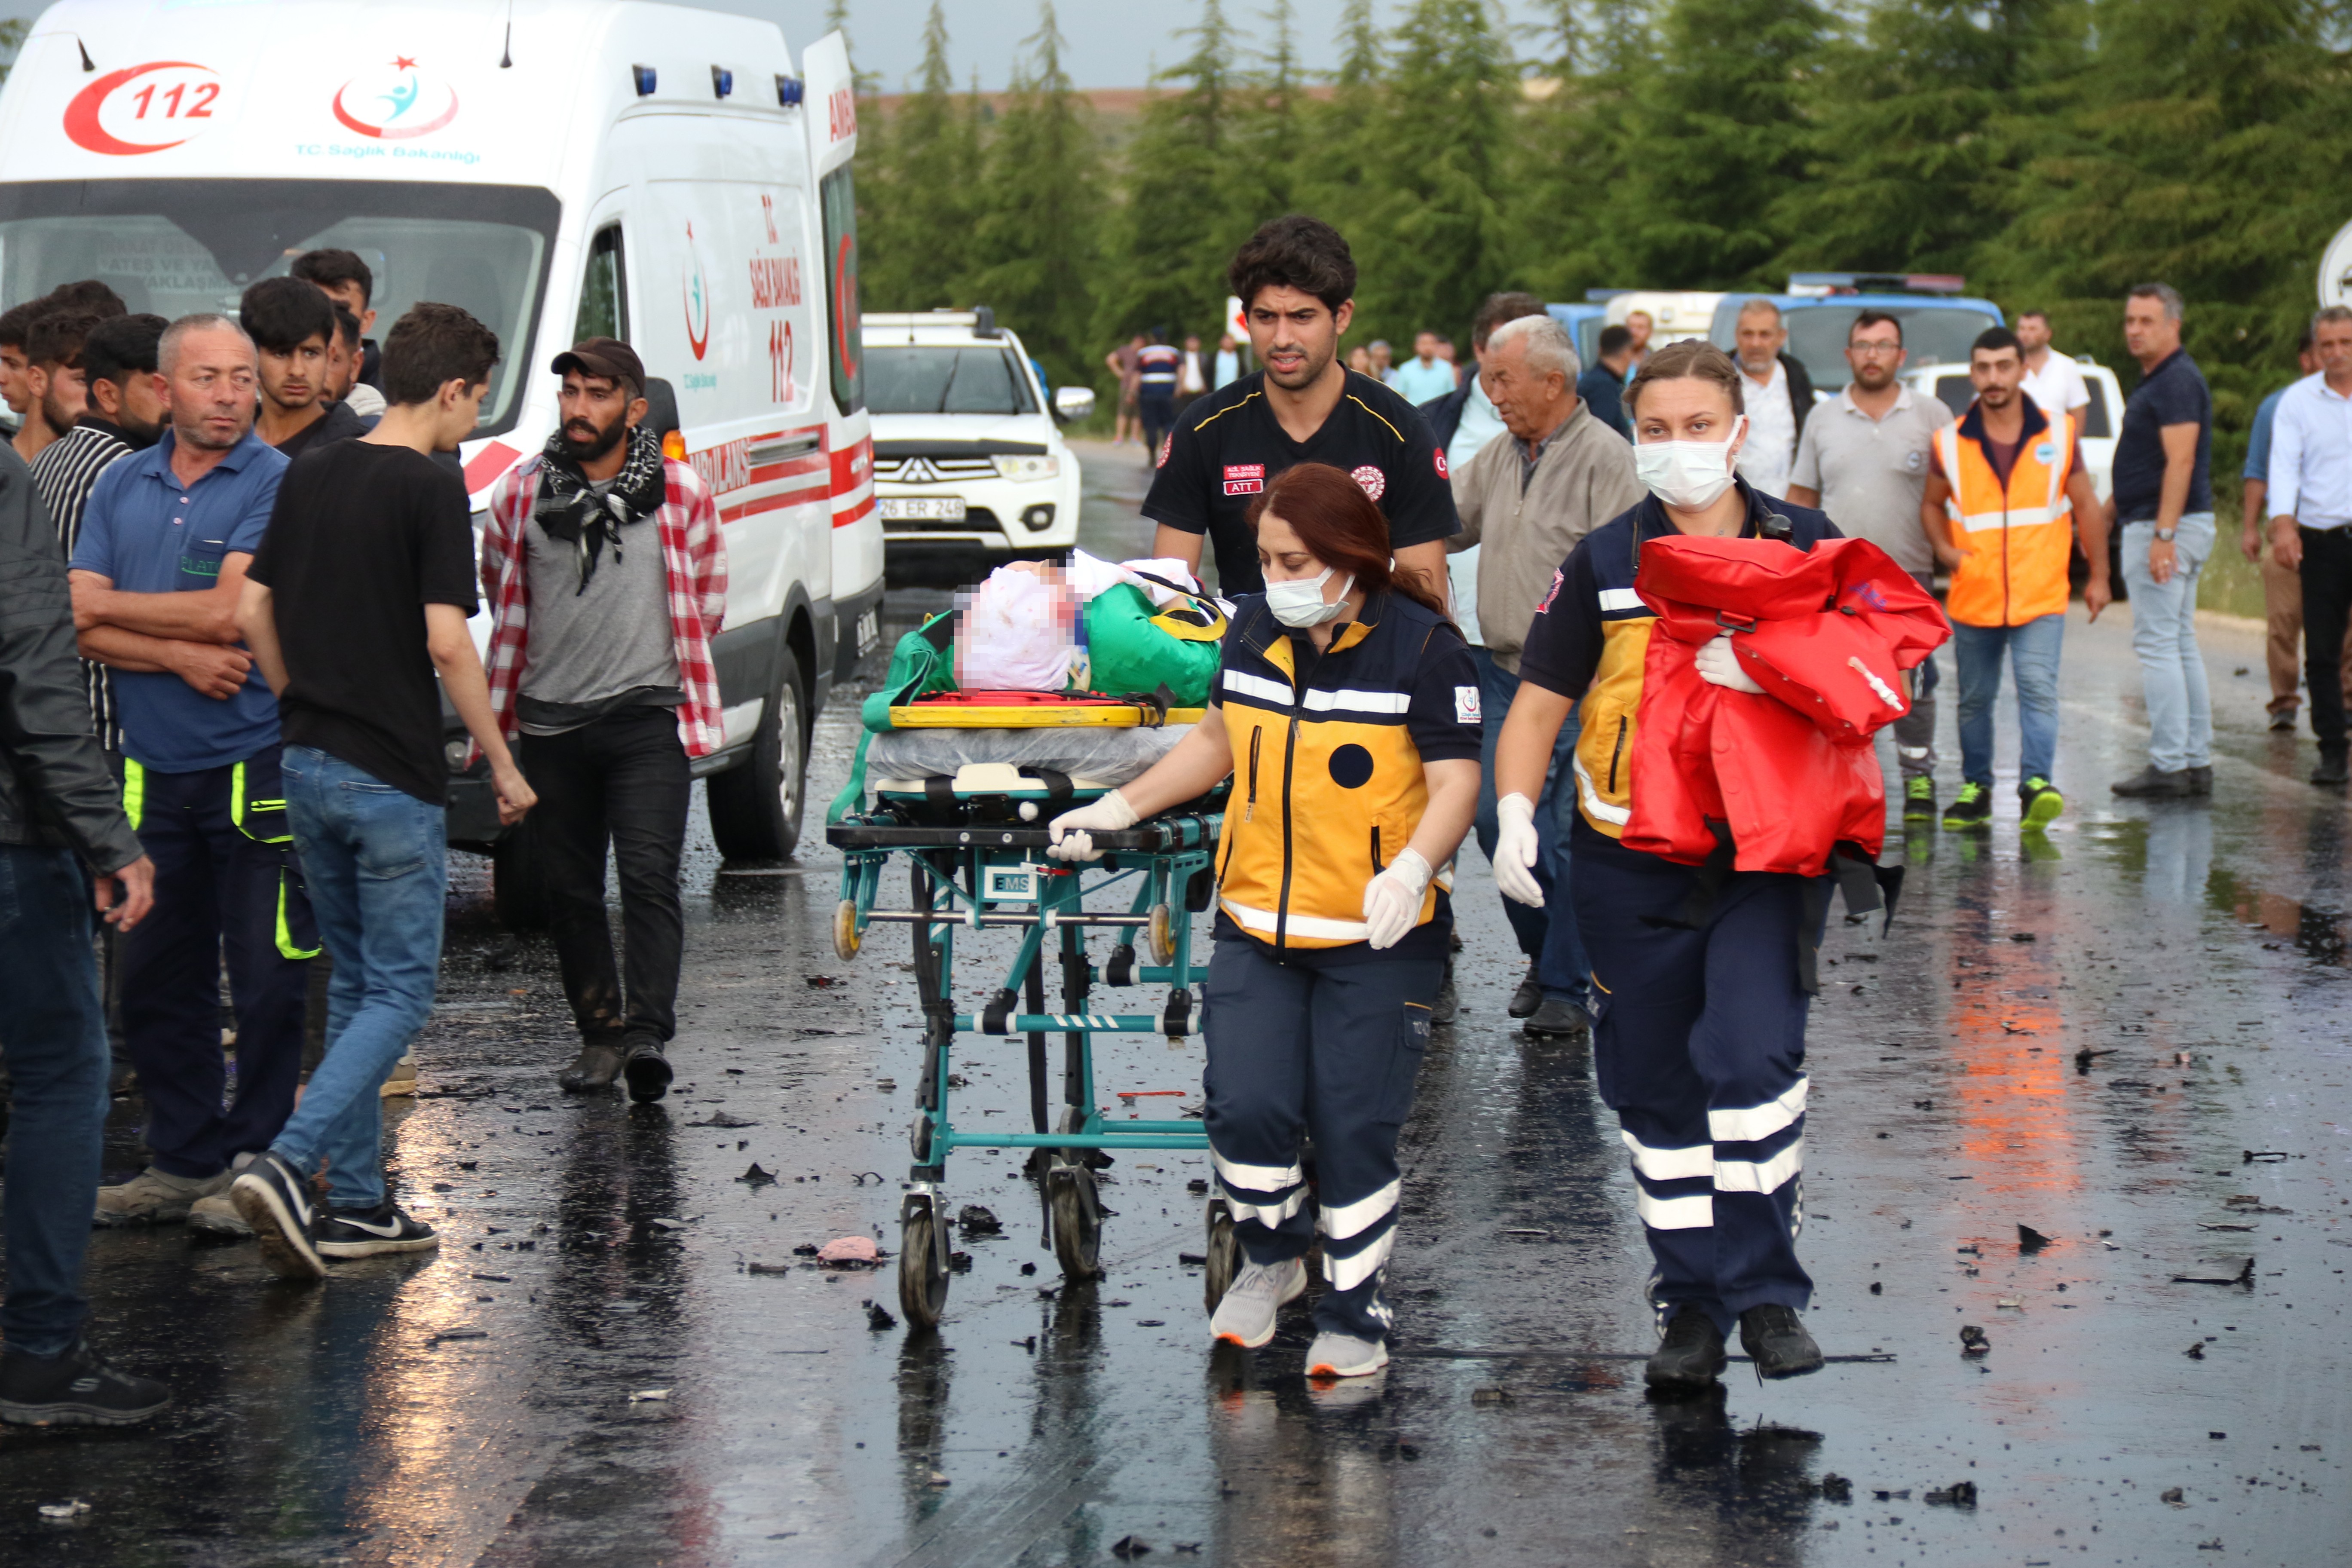 Eskişehir’de karavan ve otomobilin kafa kafaya çarpışması sonucu meydana gelen trafik kazasında 1’i ağır 5 kişi yaralandı. Karavanda sıkışan Fransız uyruklu 2 kişi itfaiye ve sağlık ekiplerinin yoğun uğraşları sonucunda kurtarıldı.